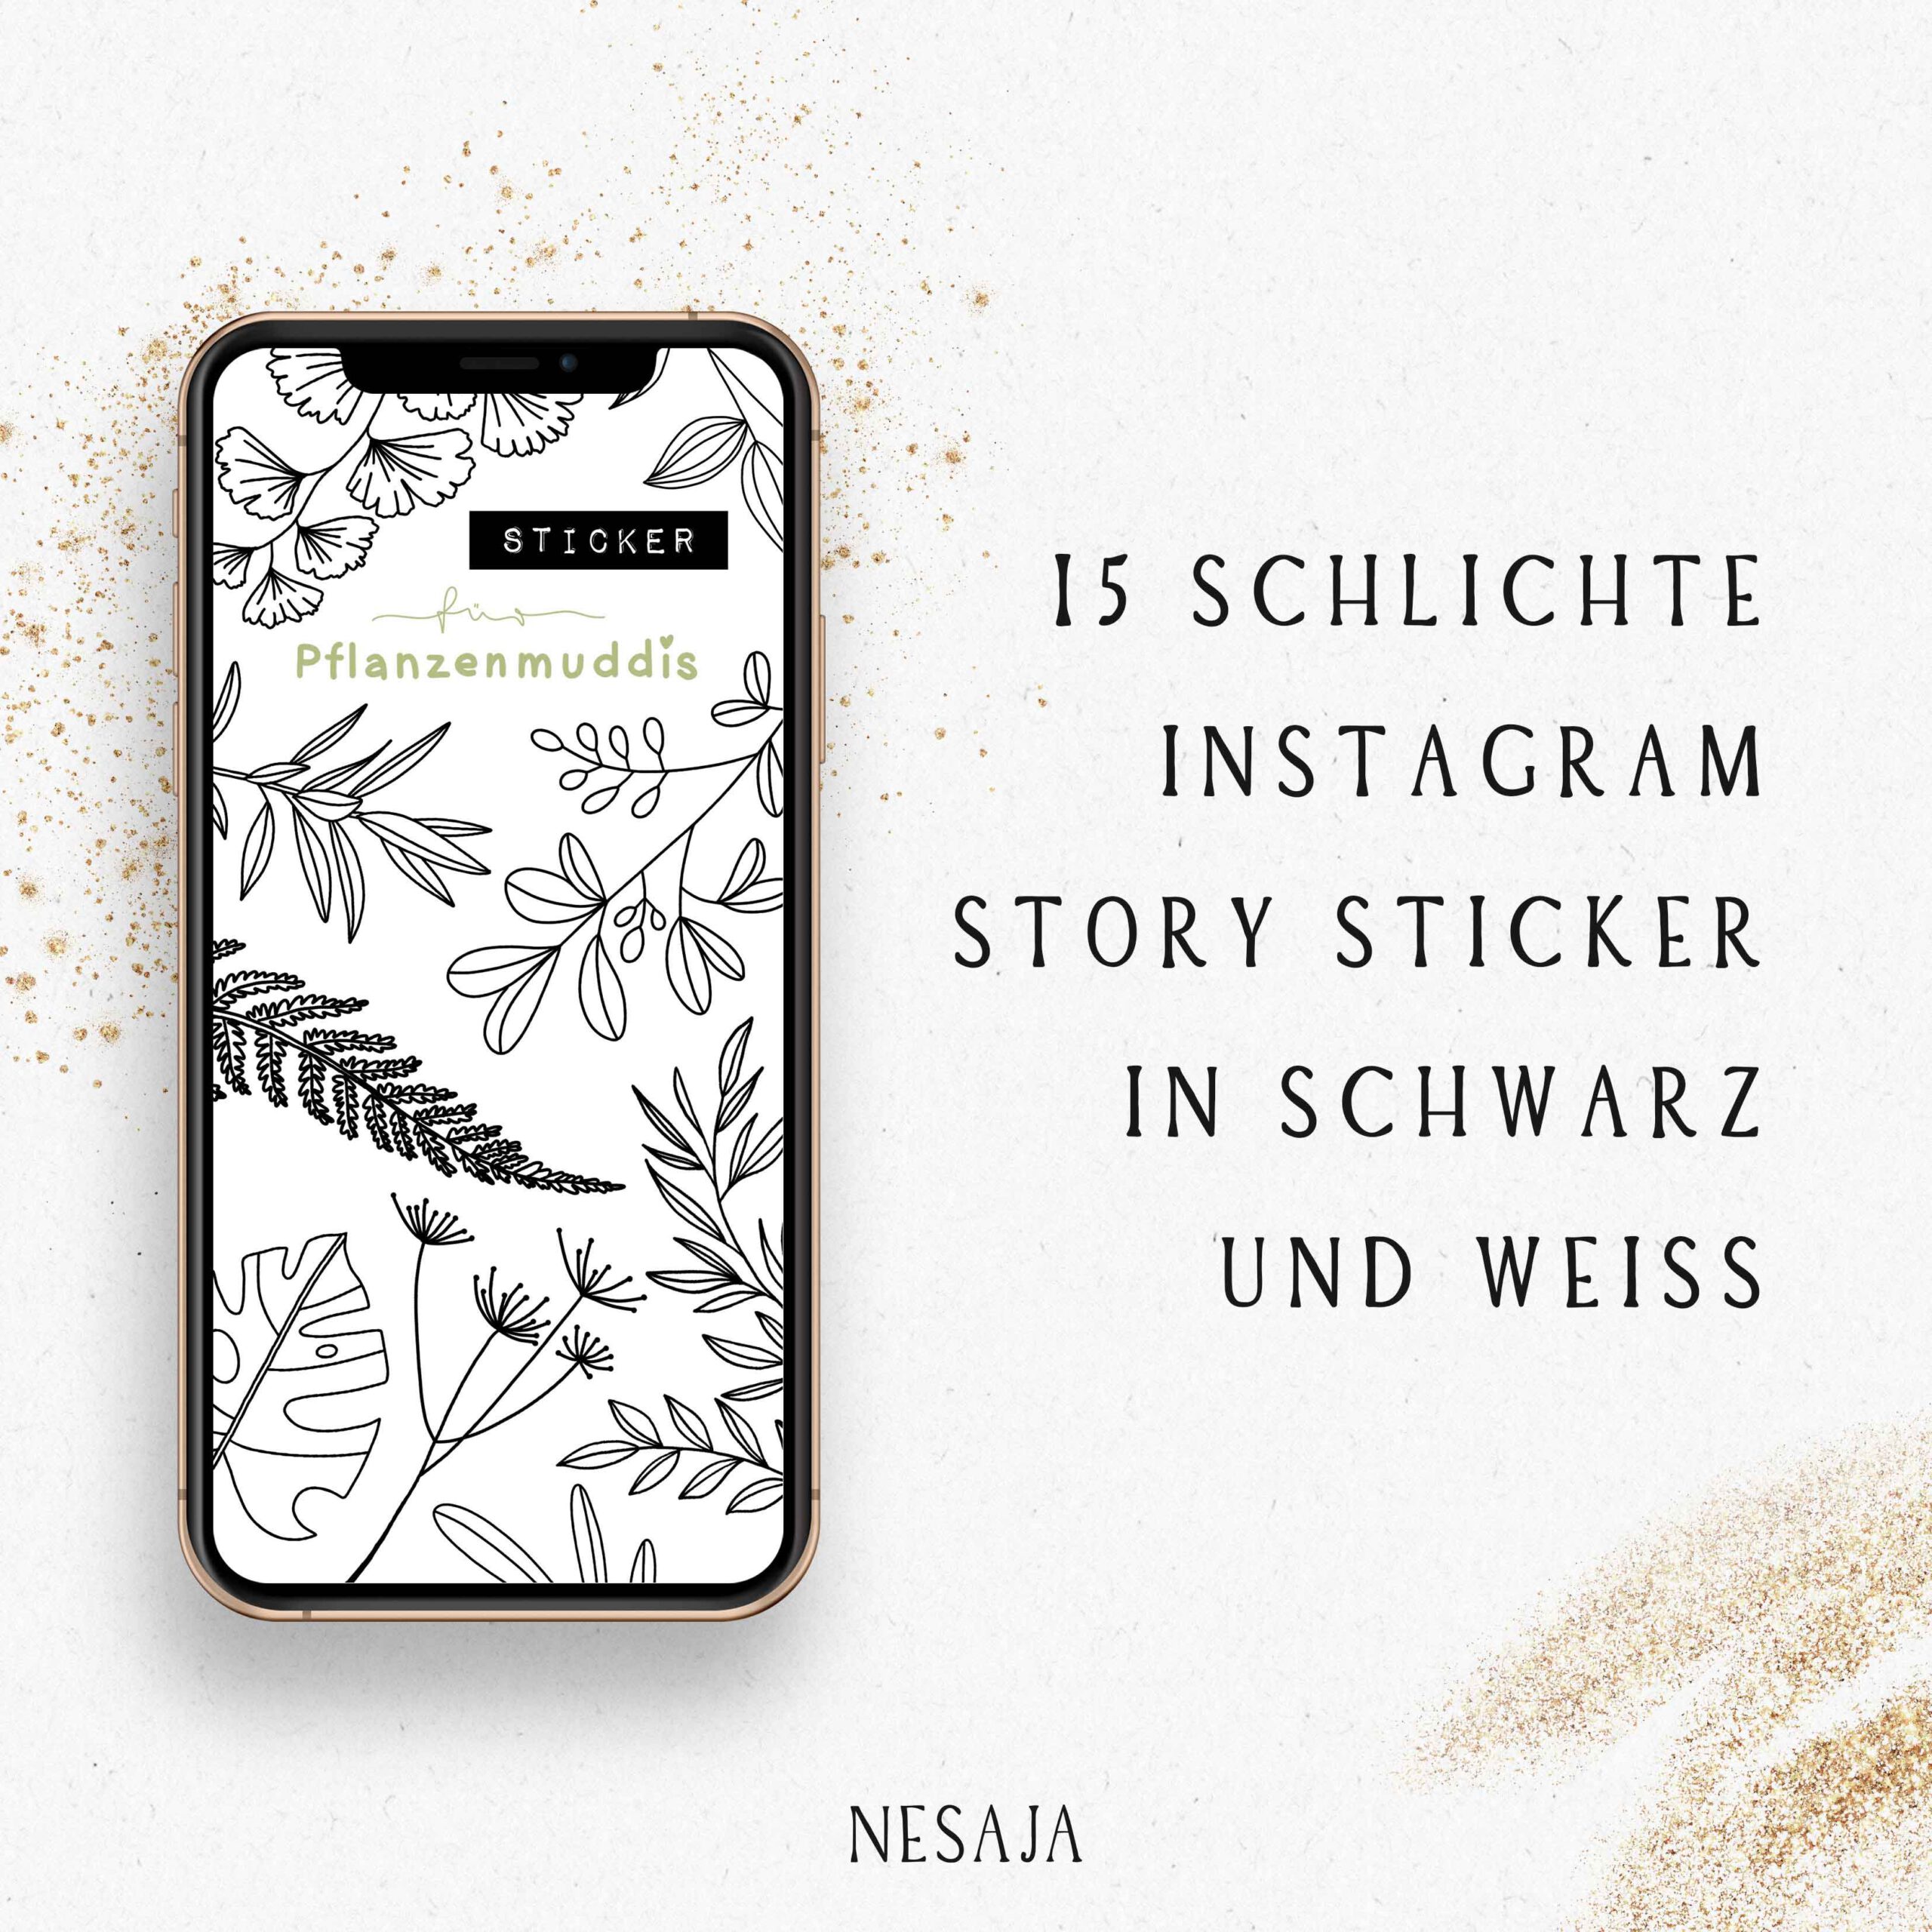 Instagram Story Sticker für Pflanzemuddis Pflanze Blätter Natur